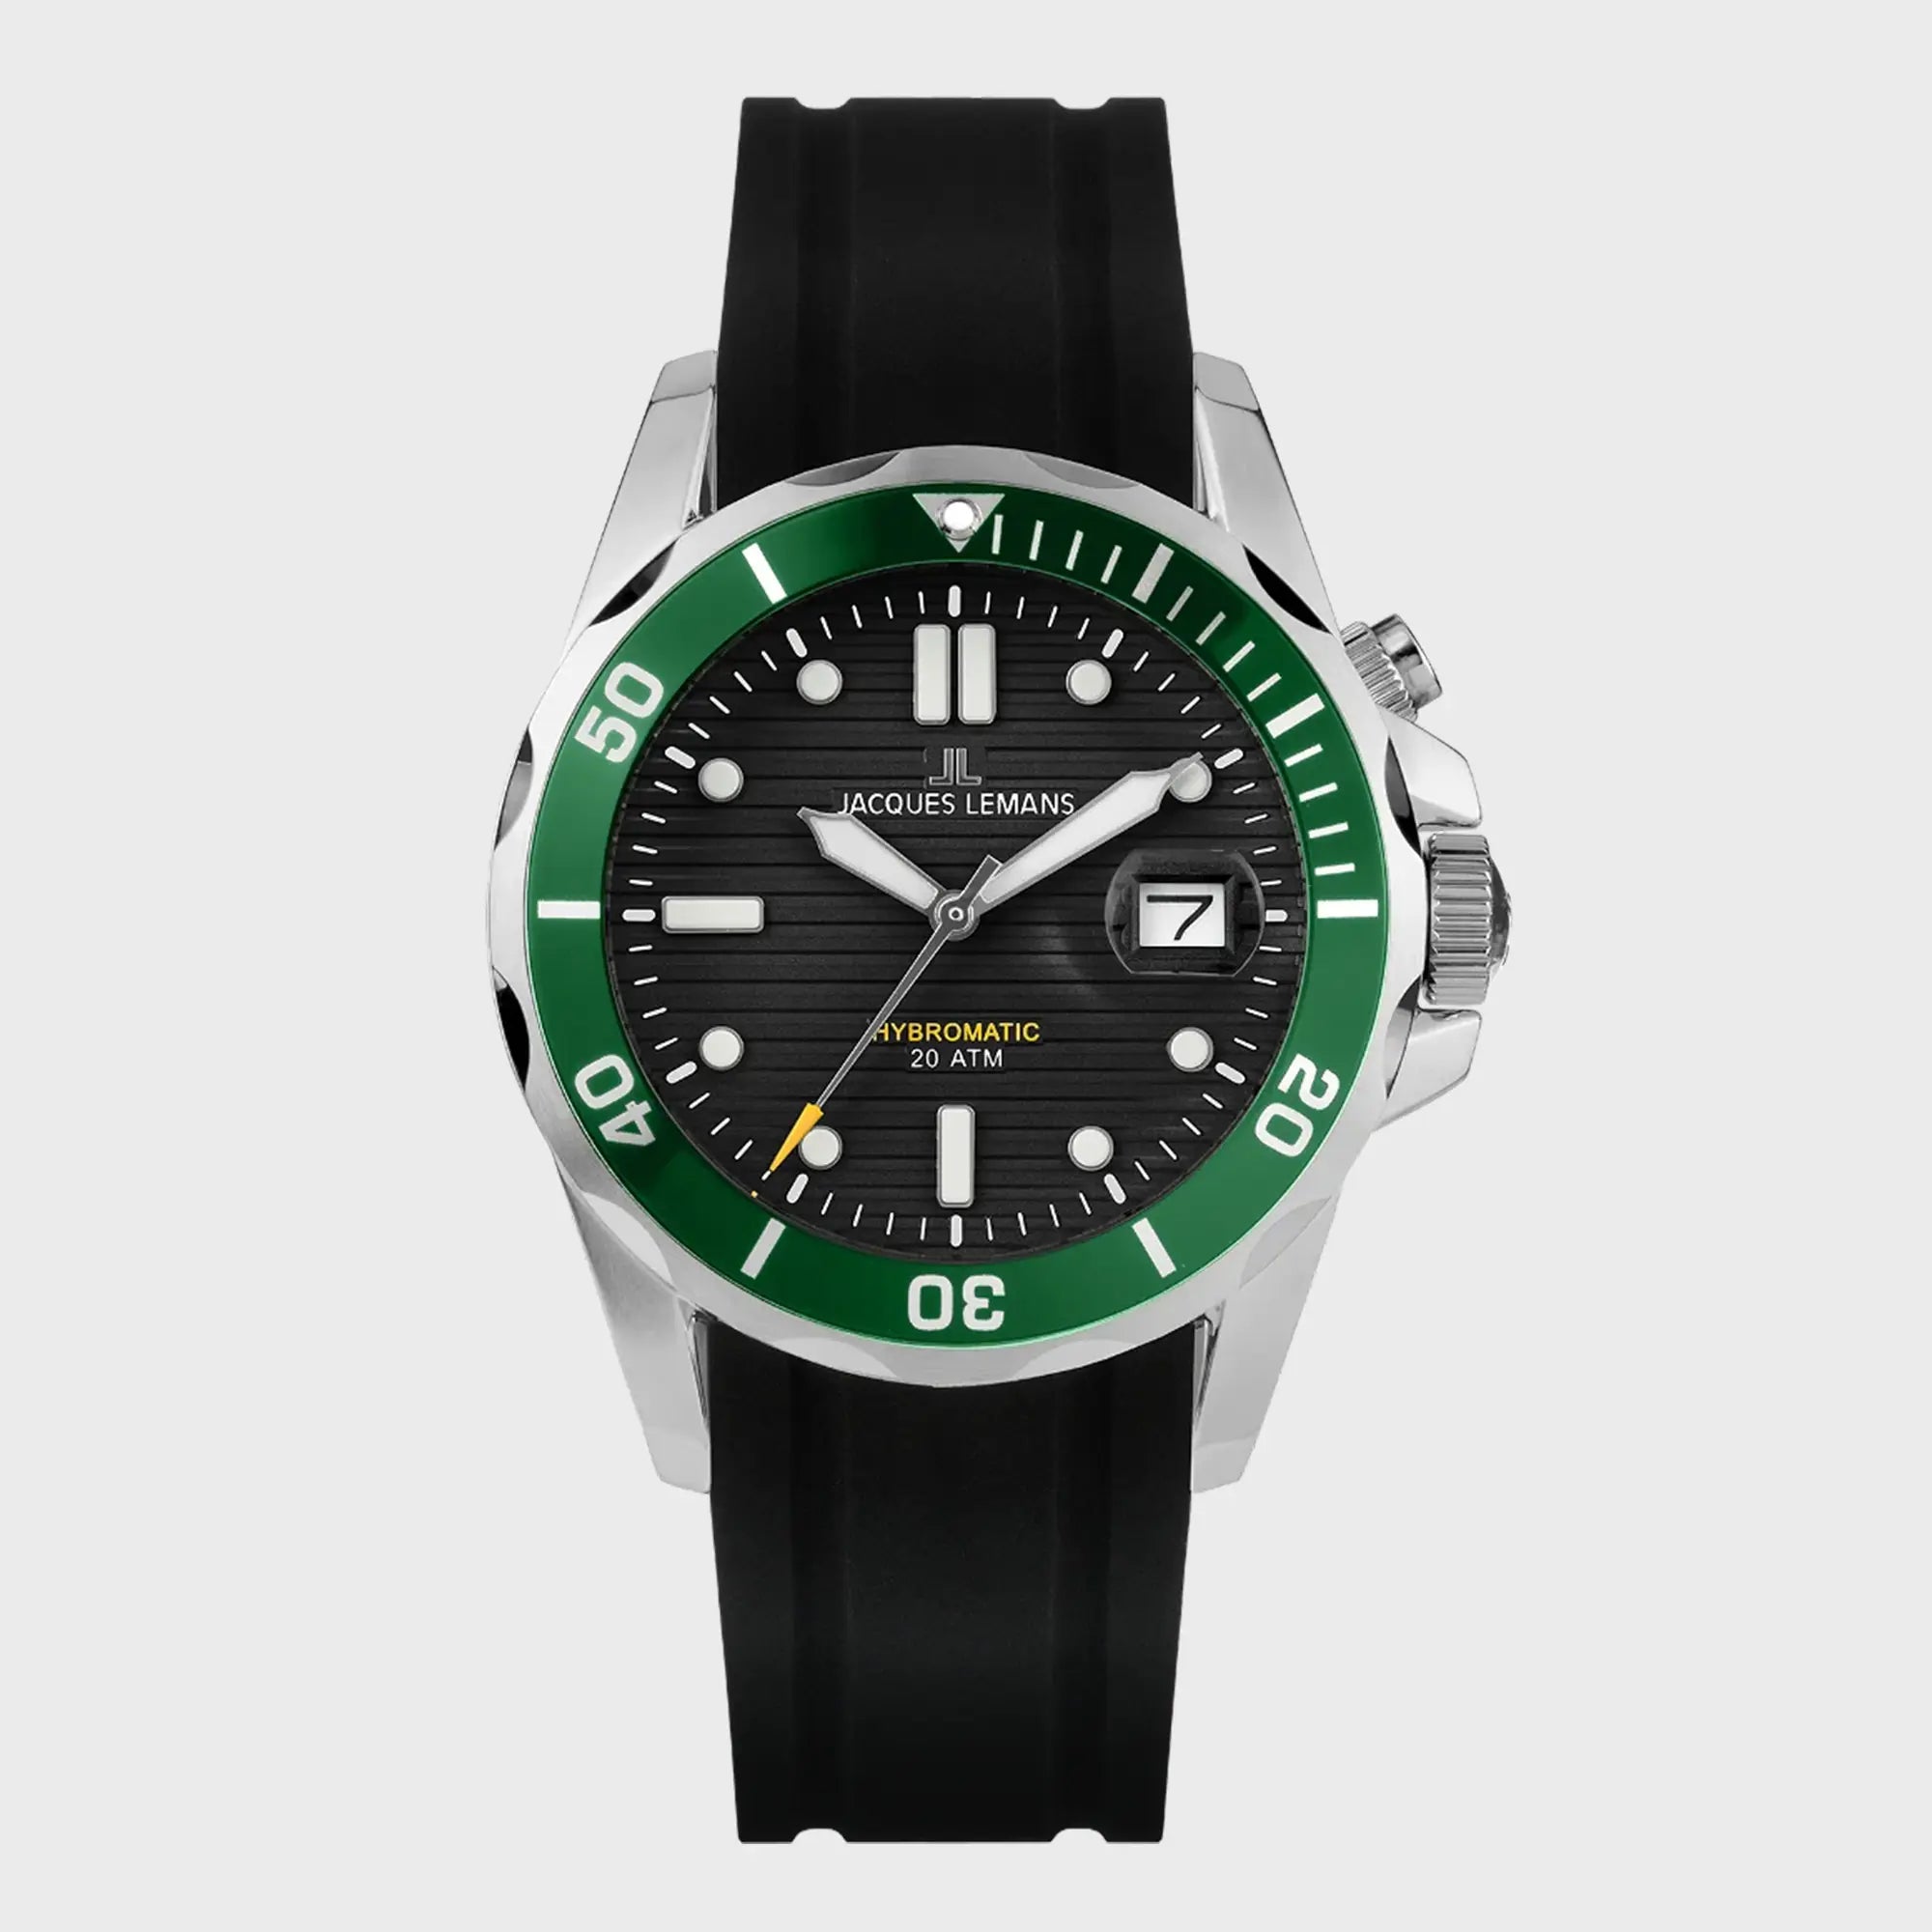 Frontale Ansicht der Jacques Lemans Uhr "Hybromatic" mit schwarzem Zifferblatt, grüner Lünette und braunem Lederband